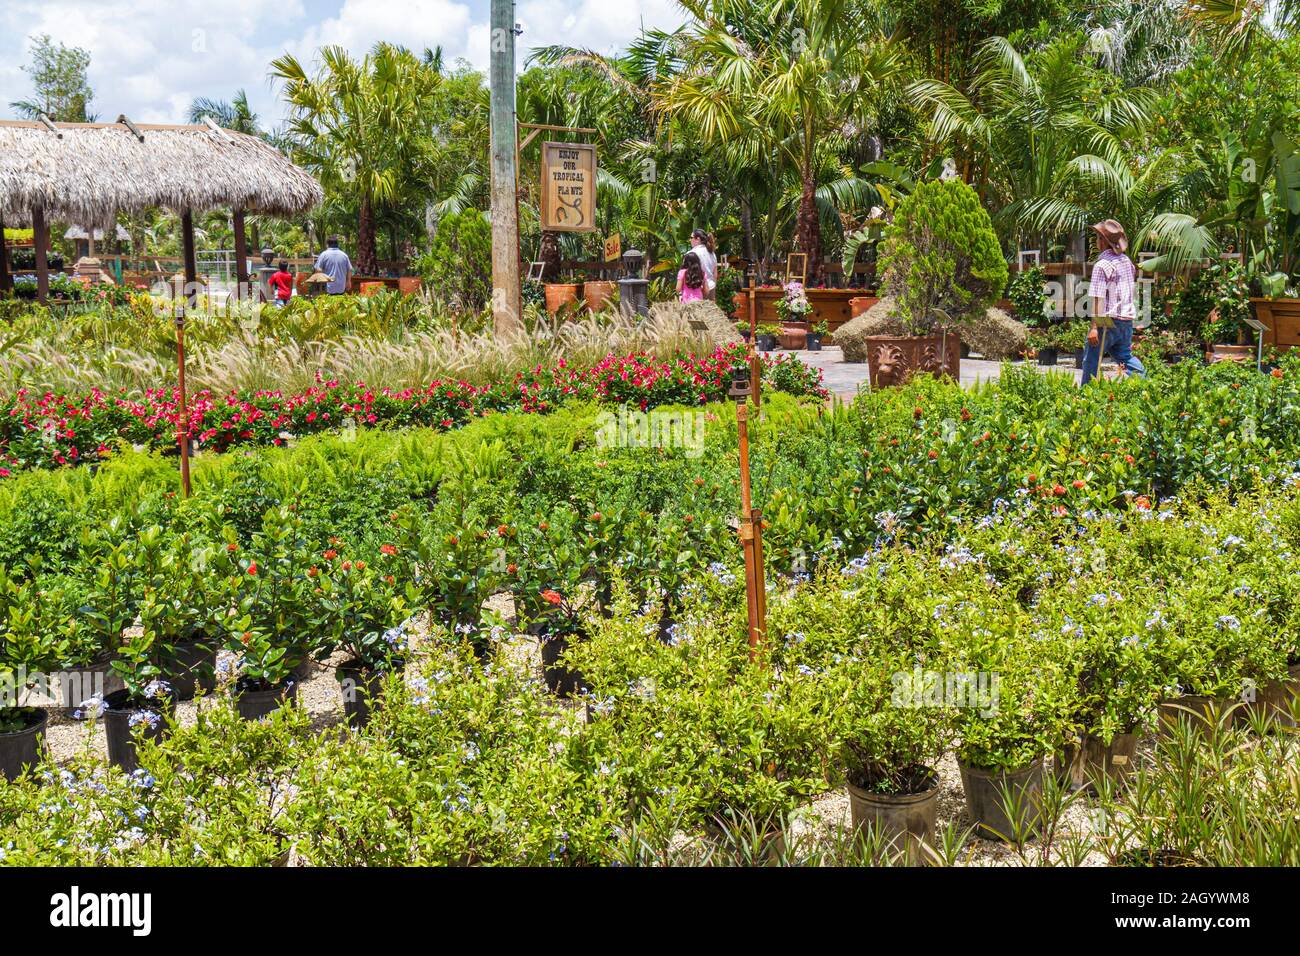 Fort Ft. Lauderdale Florida, Tropical Touch Garden Center, Baumschule, Pflanzen, Vitrine Verkauf, FL100515226 Stockfoto